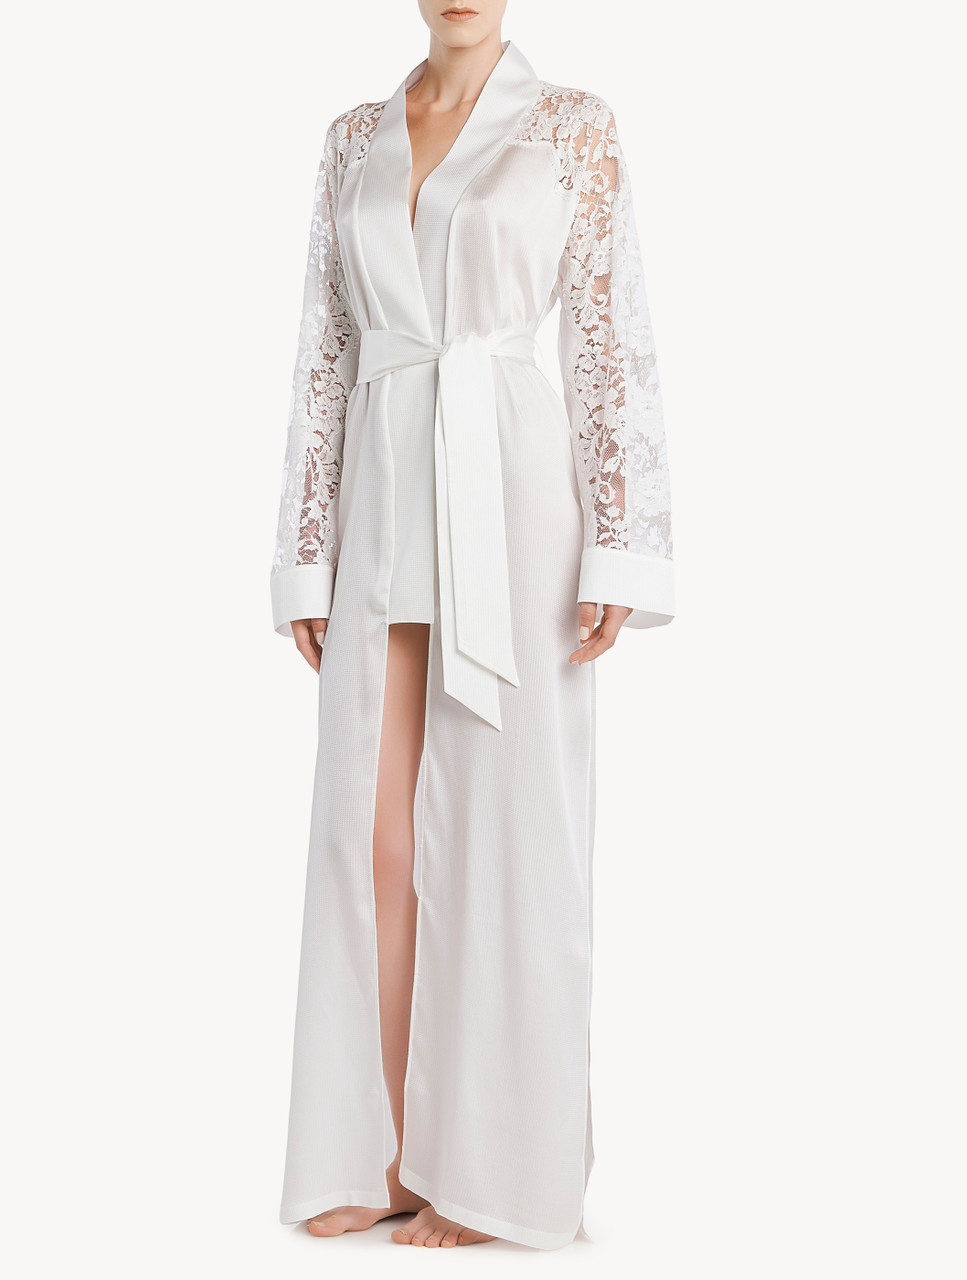 Robe in off-white silk and Leavers lace - La Perla - Euro